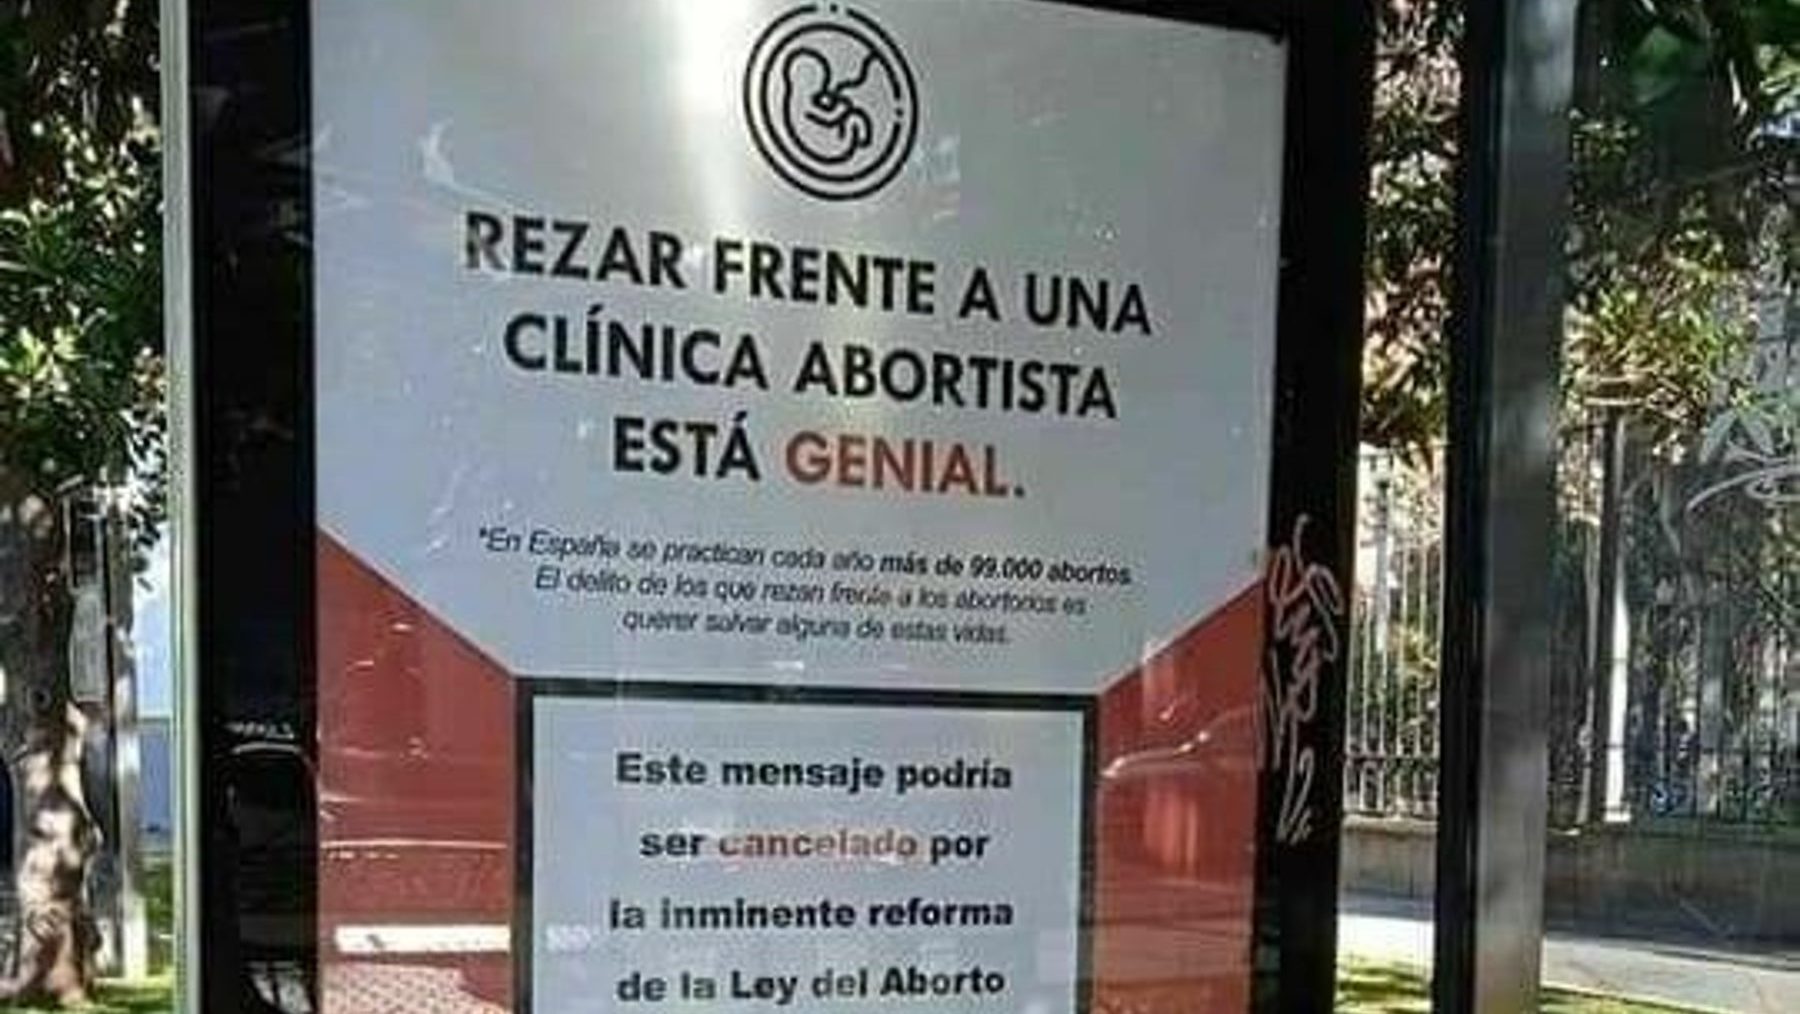 Campaña de publicidad animando a rezar frente a clínicas abortistas (IU).